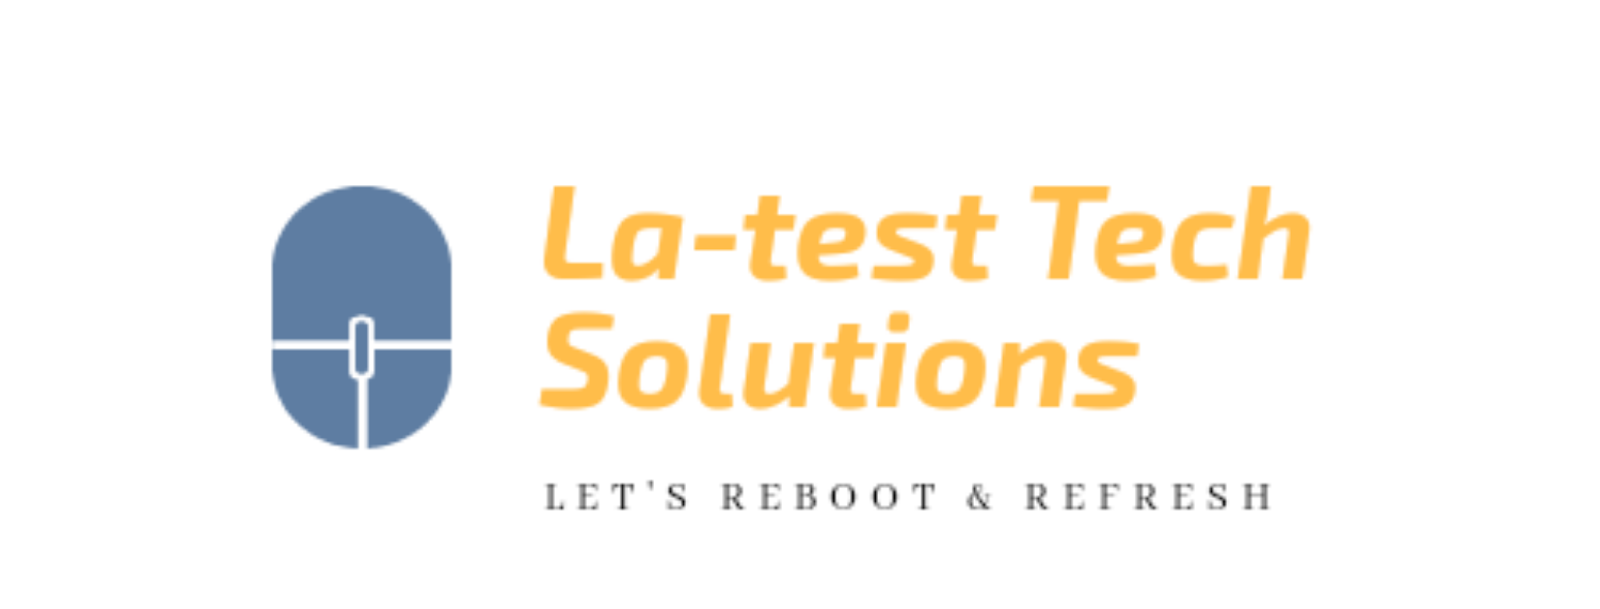 La-test Tech Solutions